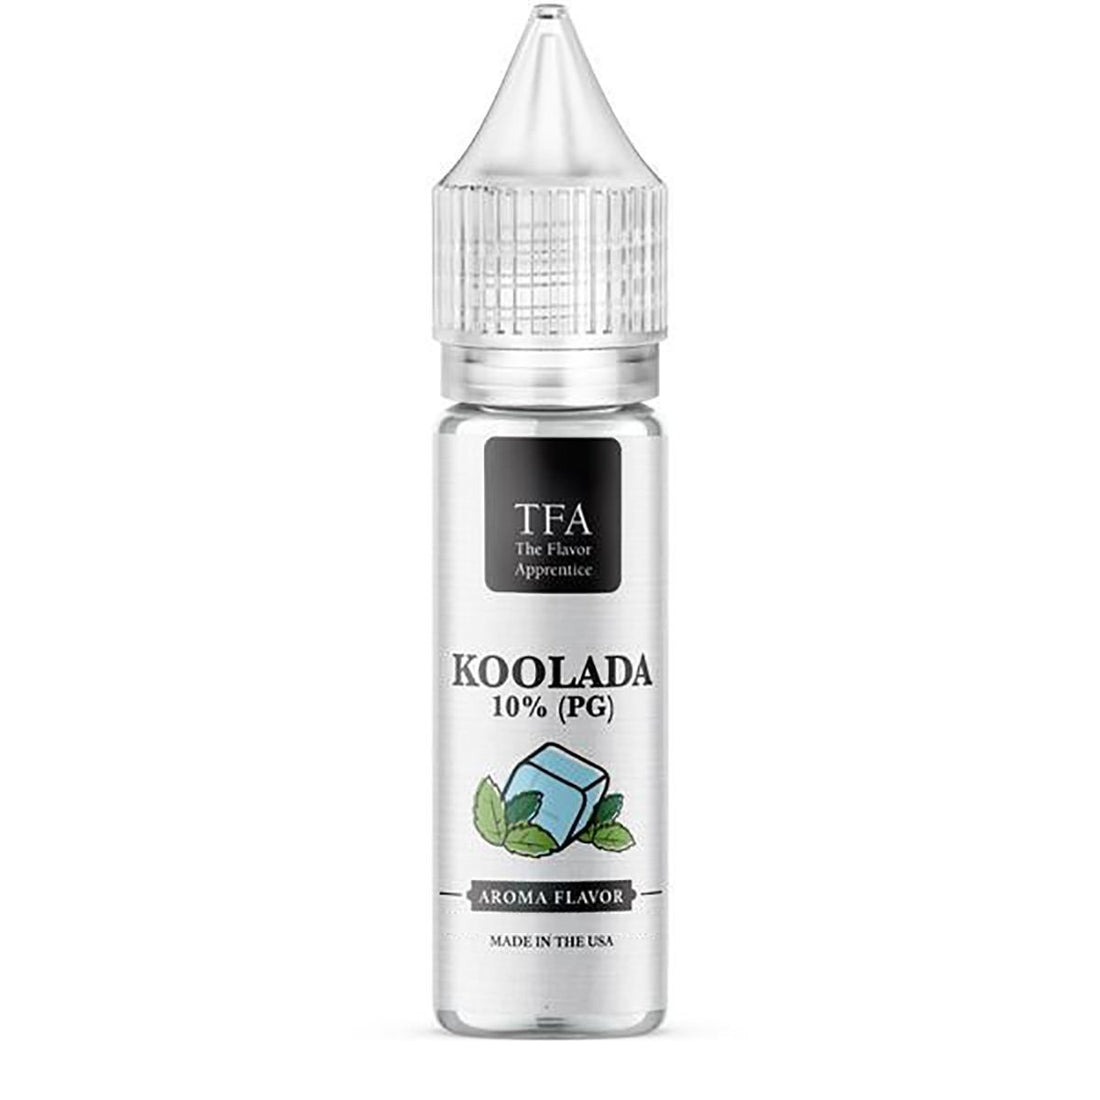 Koolada 10% PG TFA - Aroma - TFA | AR-TFA-KOOLA